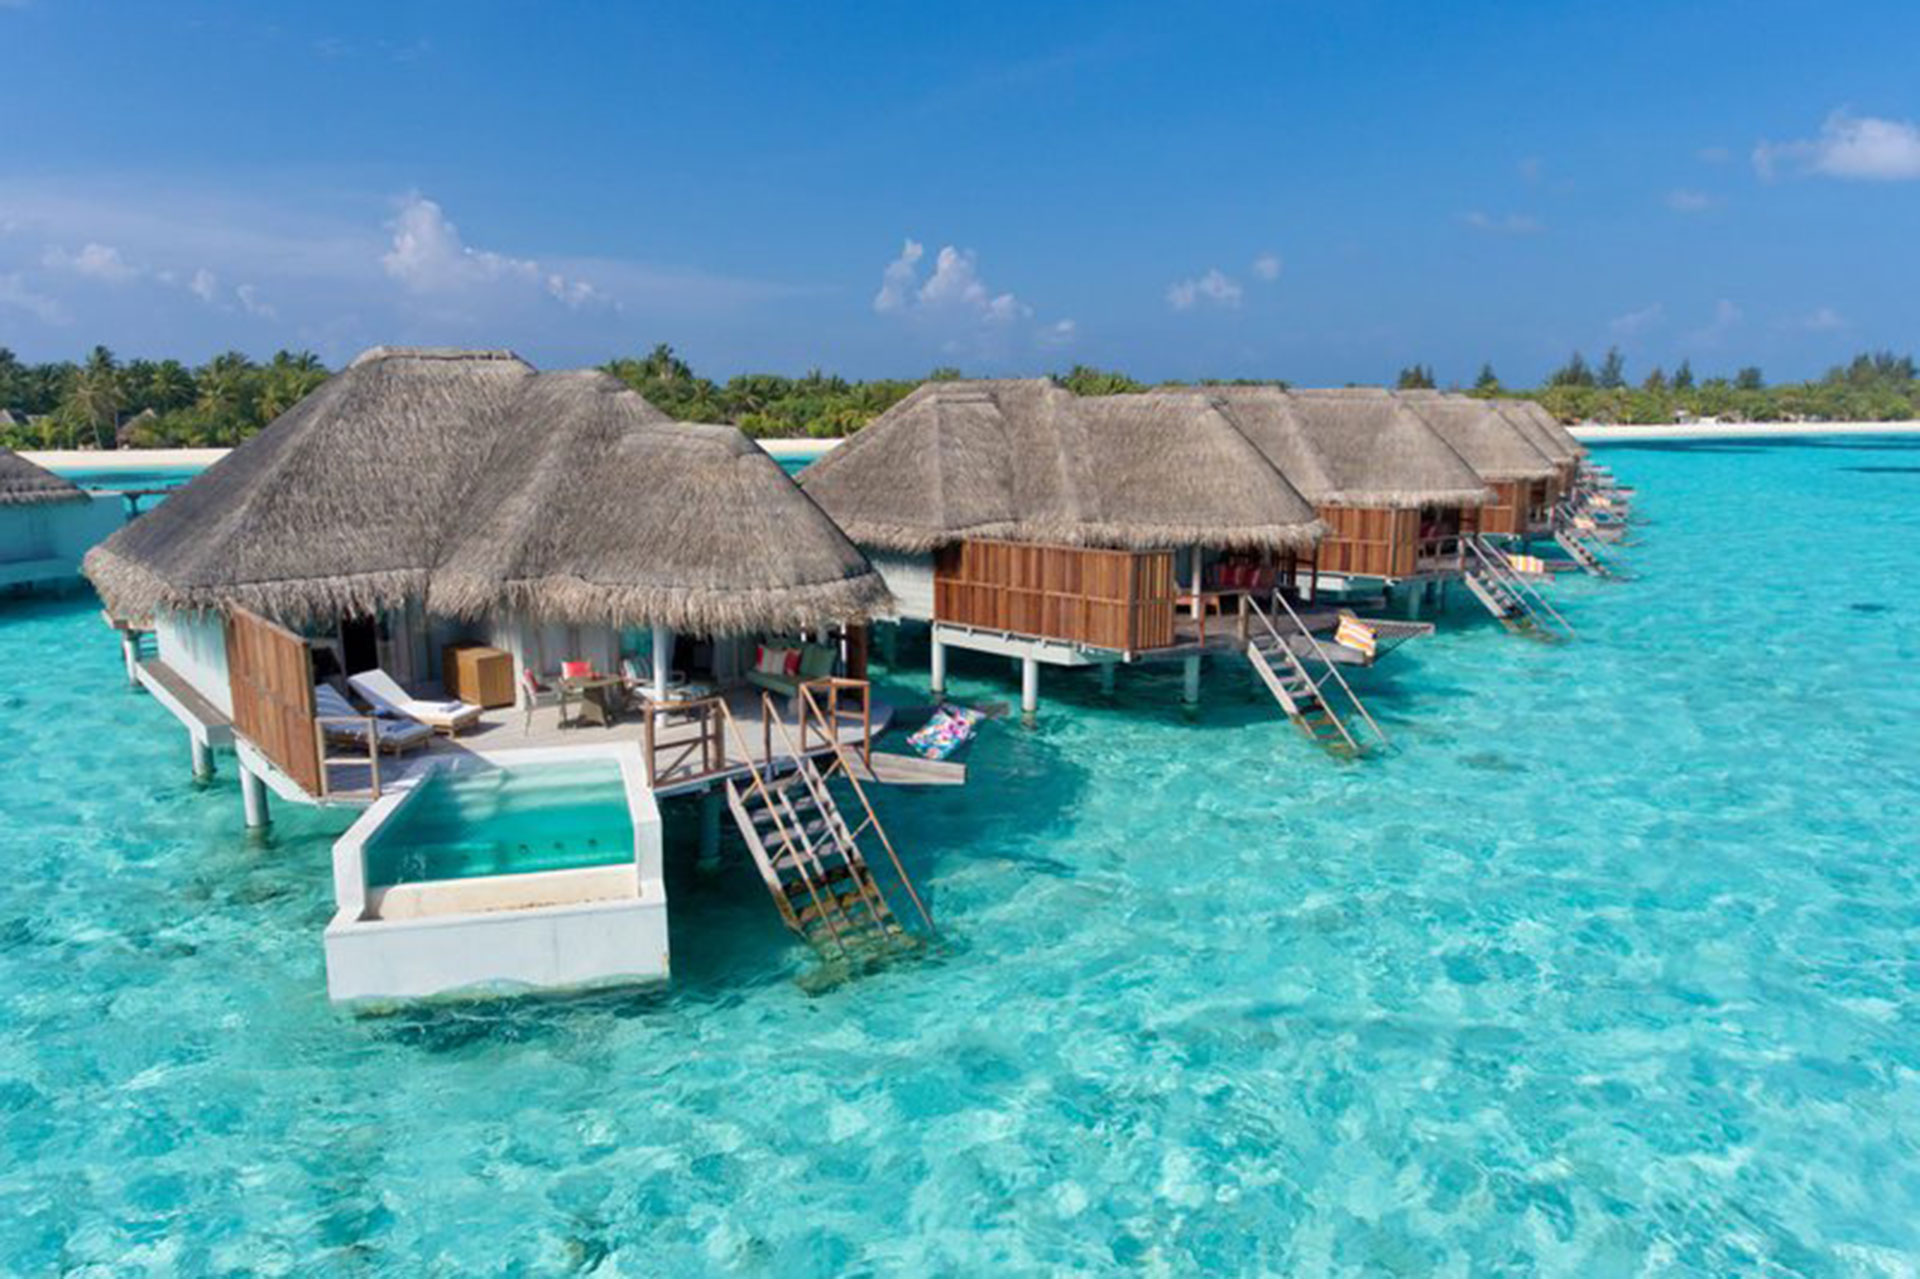 Kanuhura Resort in the Maldives